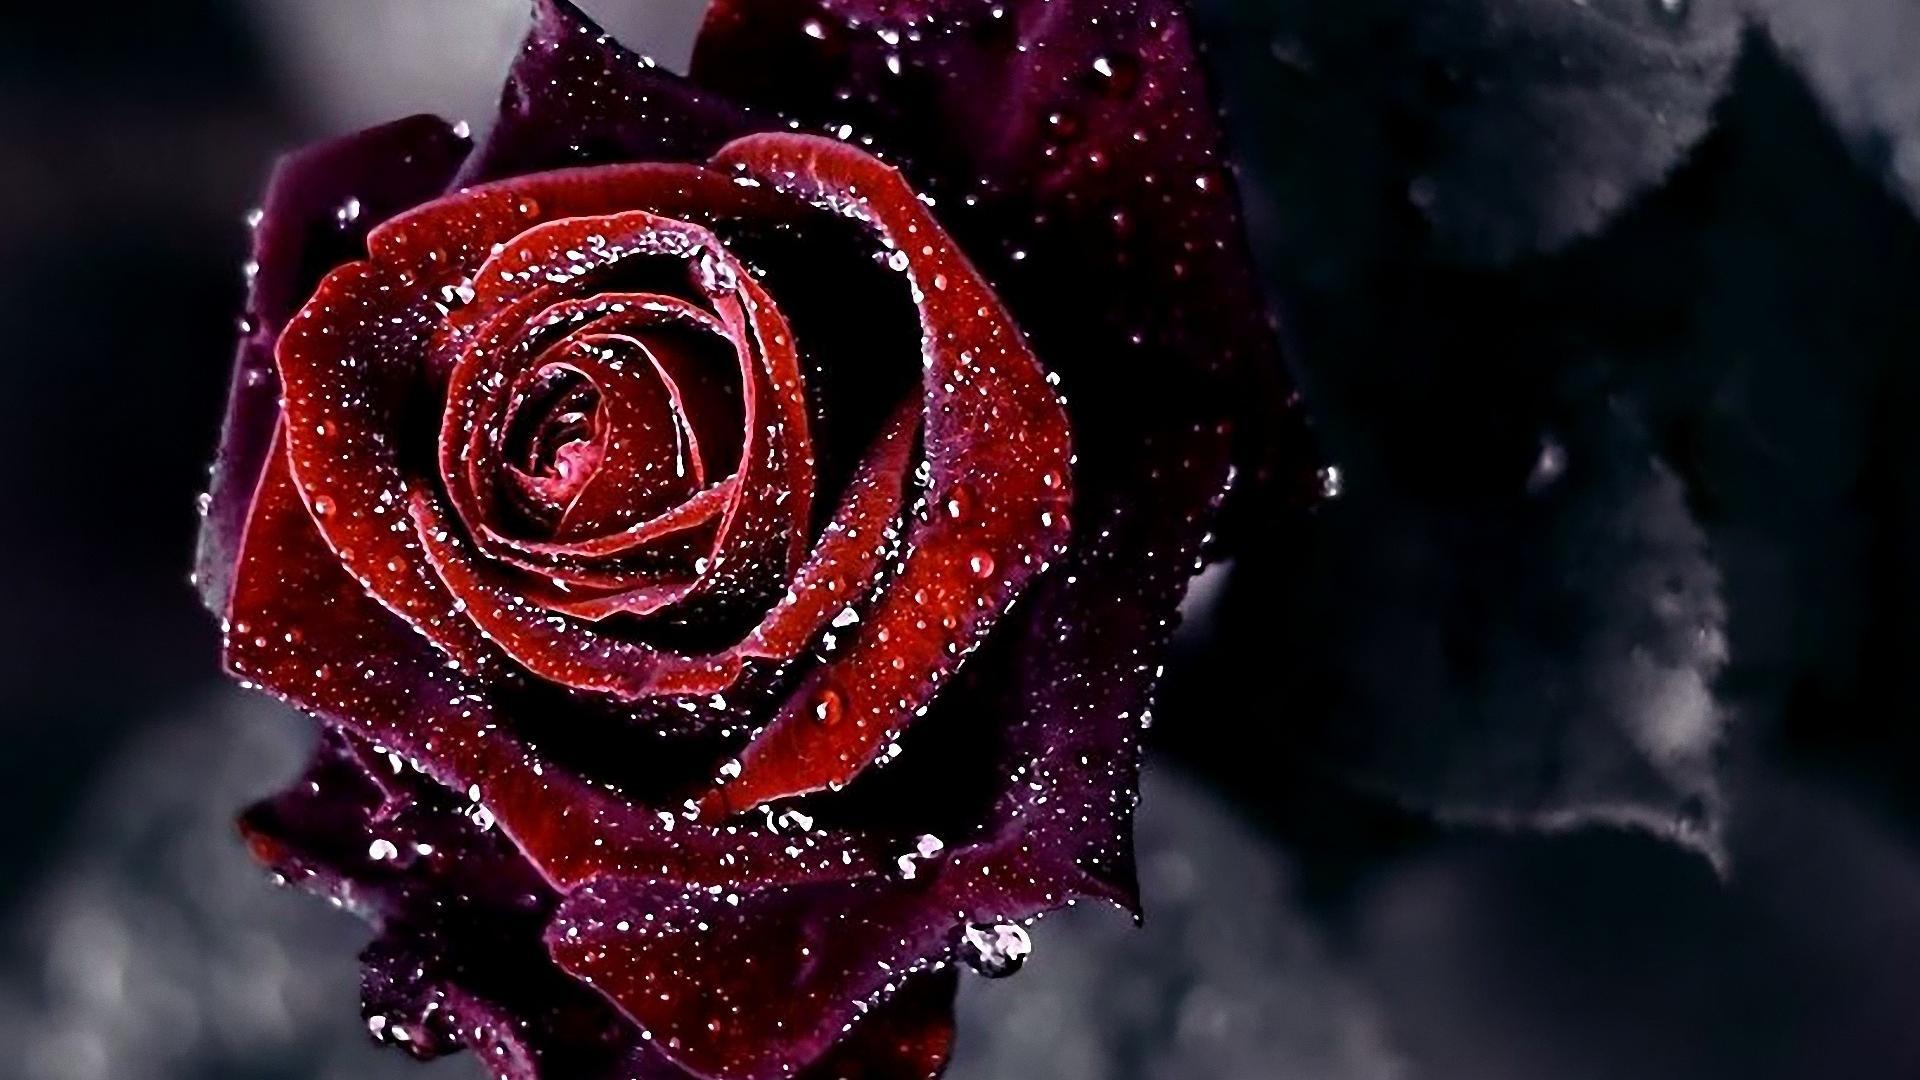 Beautifull Red Rose #Wallpaper